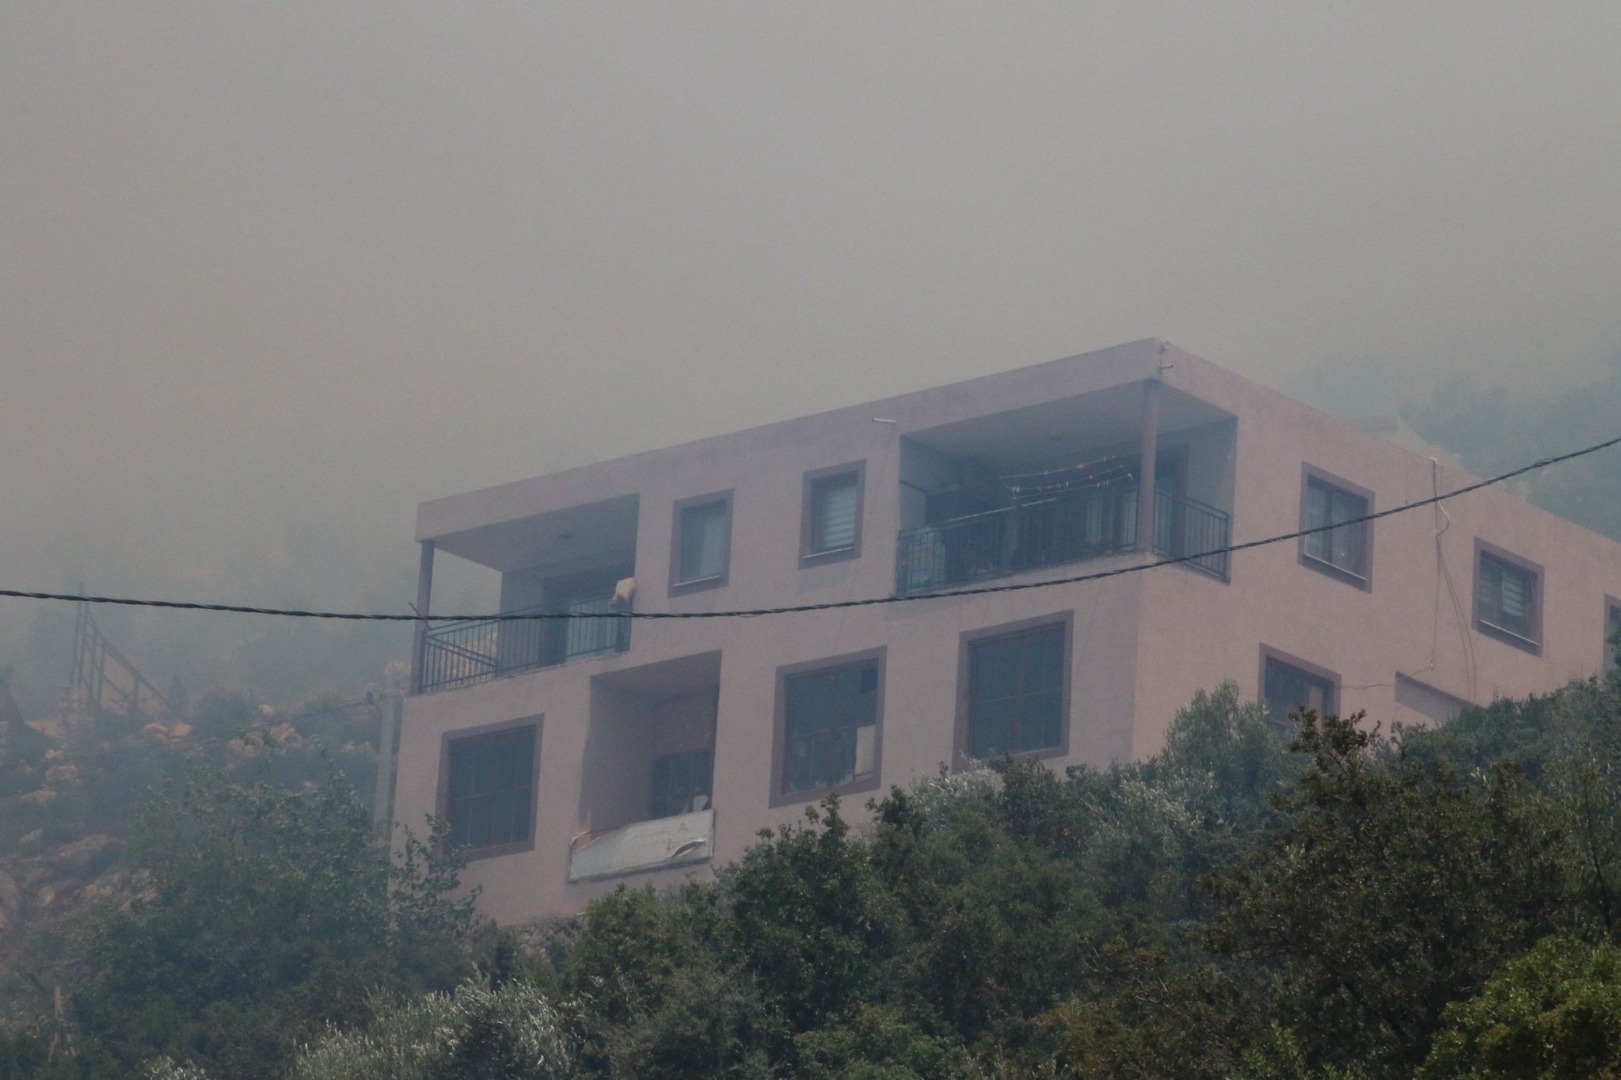 Antalya'da makilik alanda çıkan yangına müdahale ediliyor